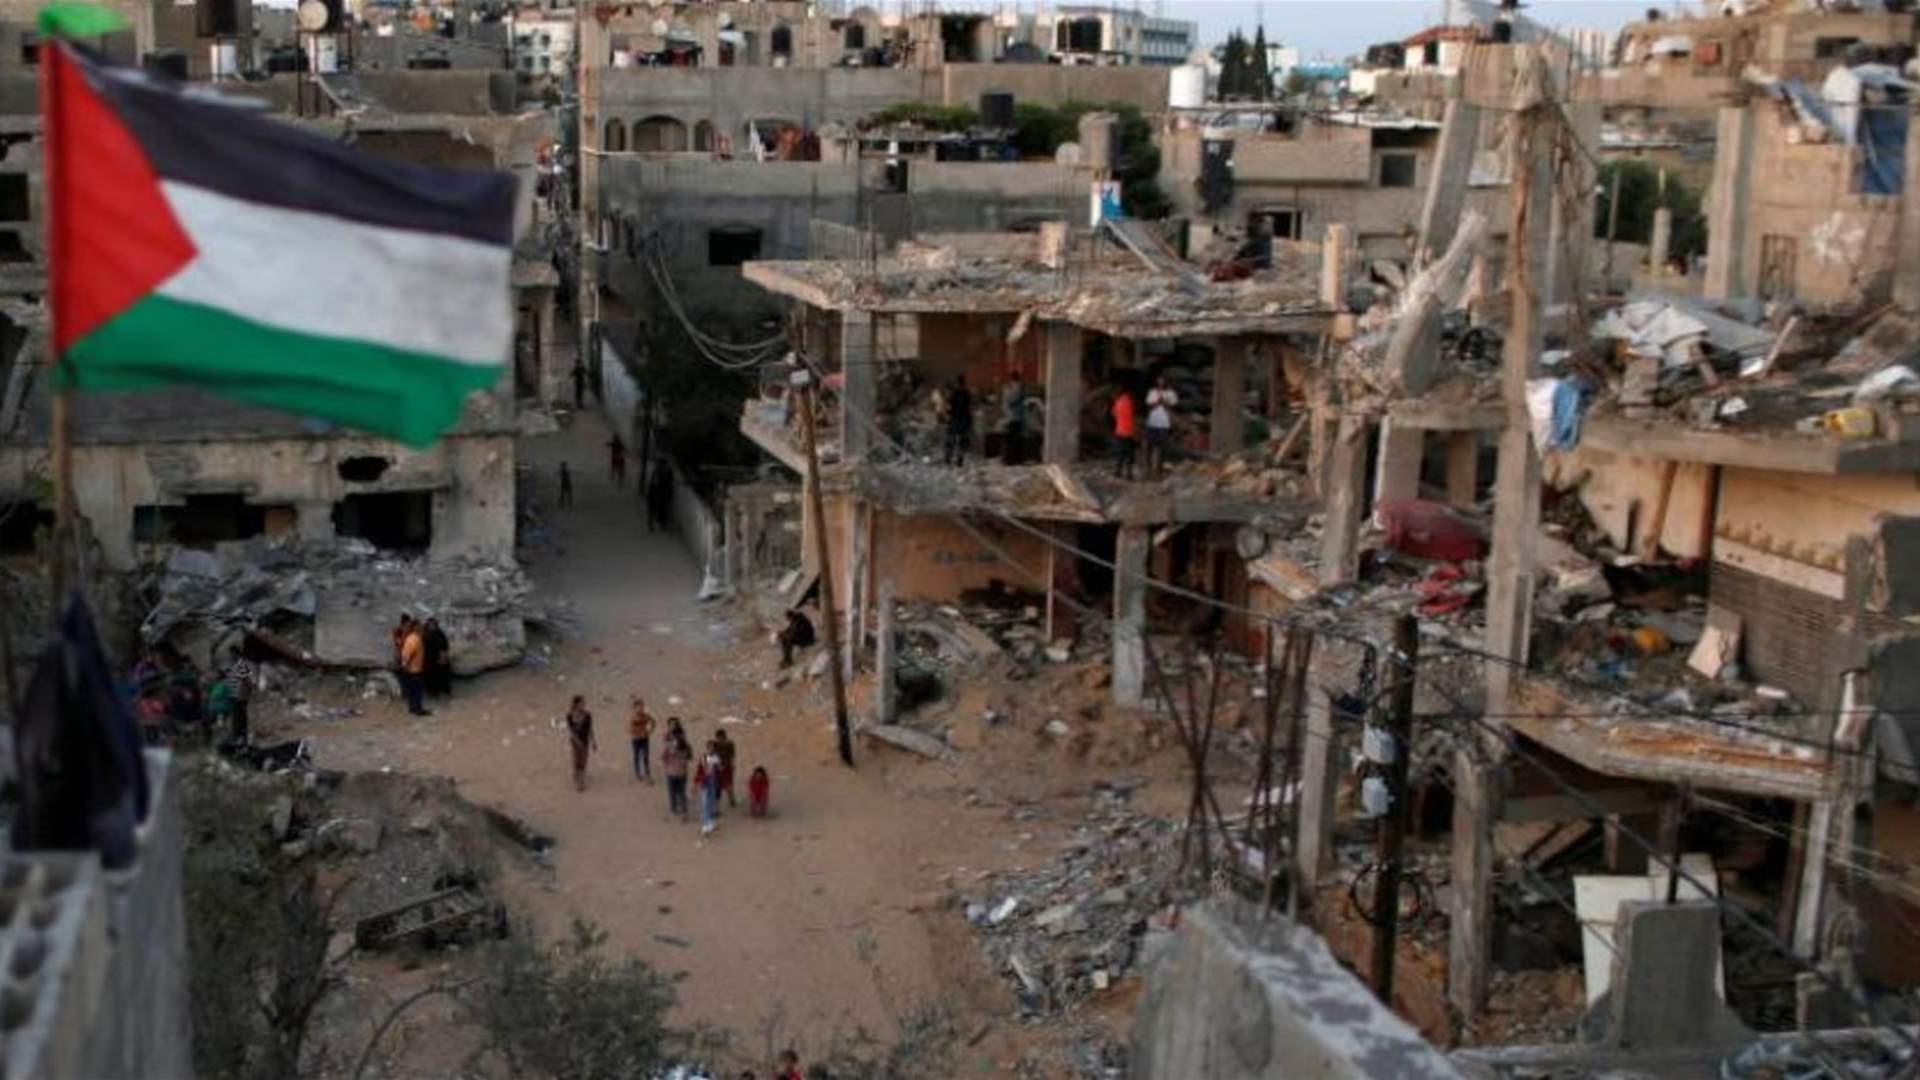 Al Arabiya: Total siege of Gaza is &#39;prohibited&#39; under international law: UN